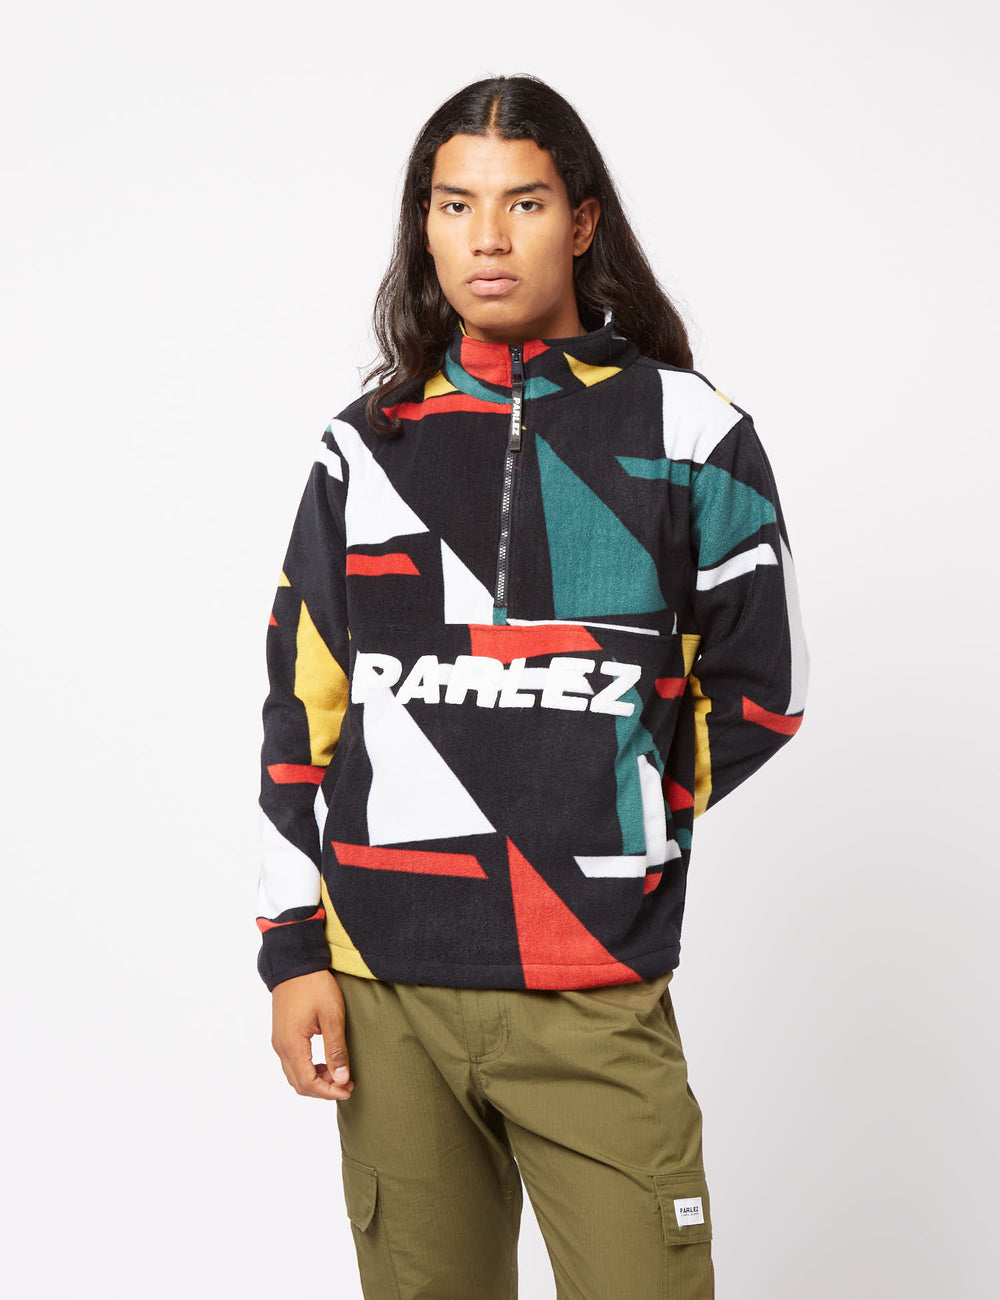 Parlez Lark – EXCESS Shirt Excess. I Green/Yellow/Red Fleece URBAN Over Pop - Urban